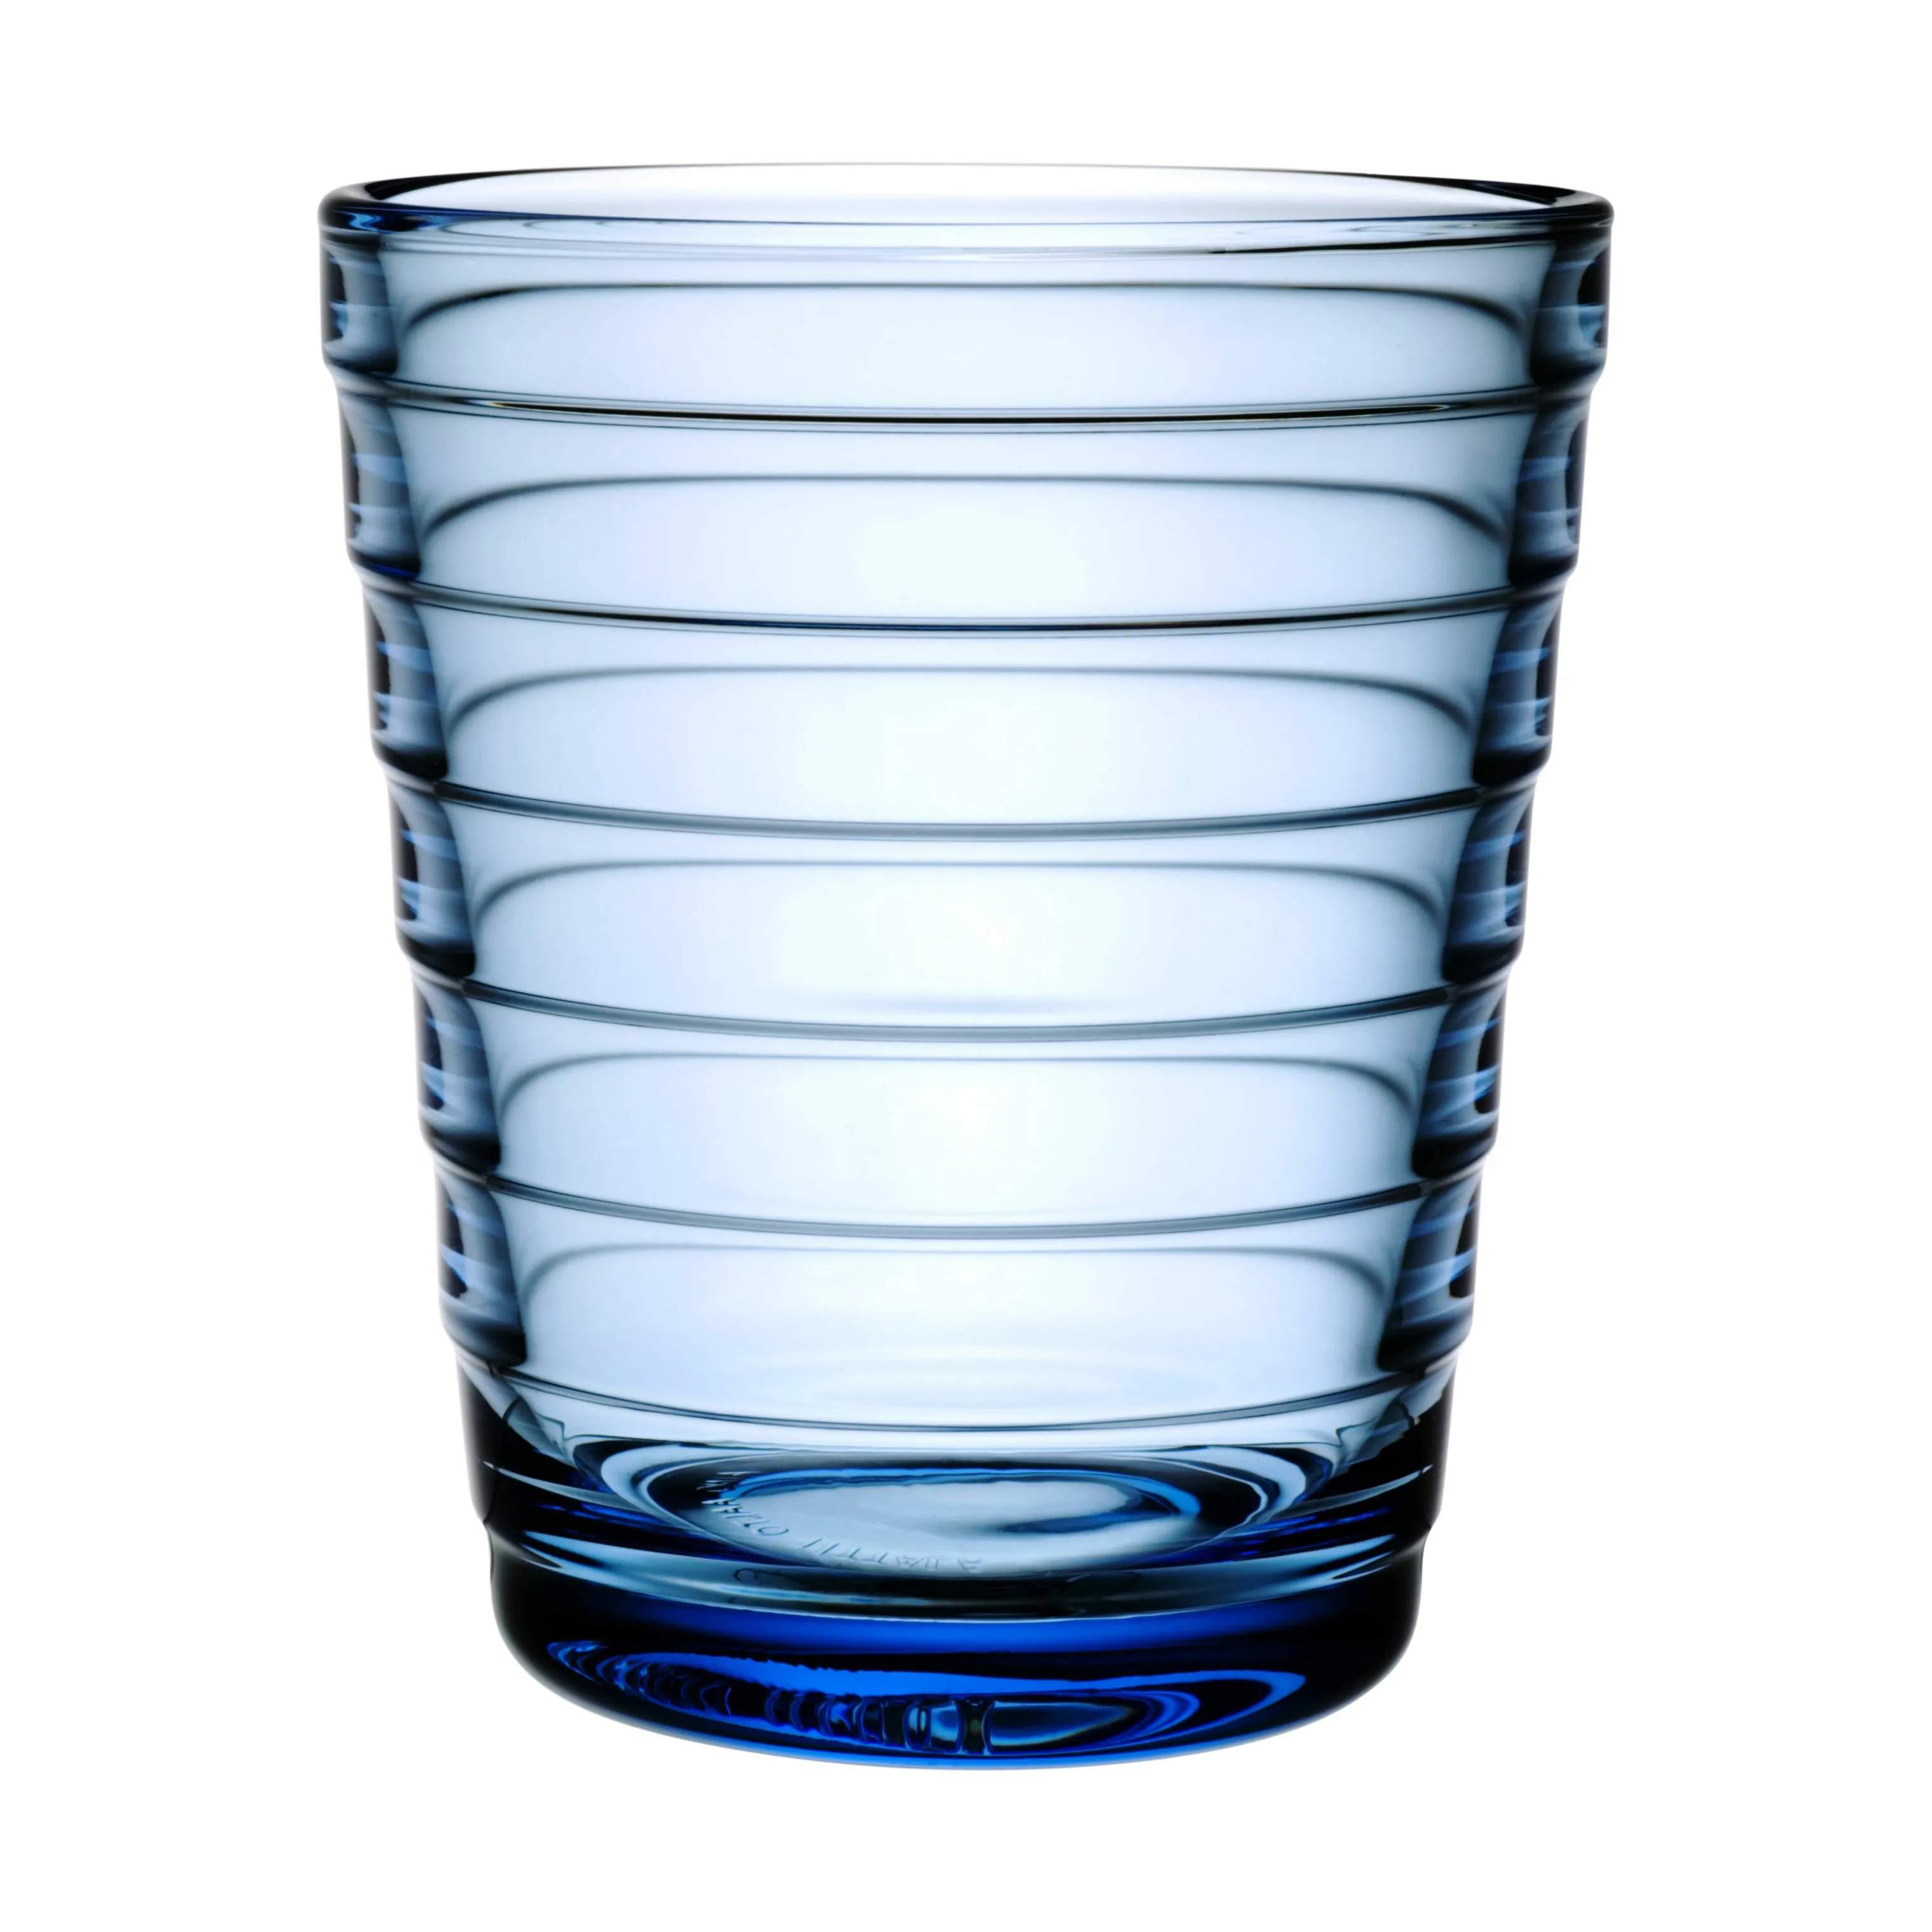 Iittala Vandglas - 2 stk. 22 cl - Glas - Lyseblå | Imerco